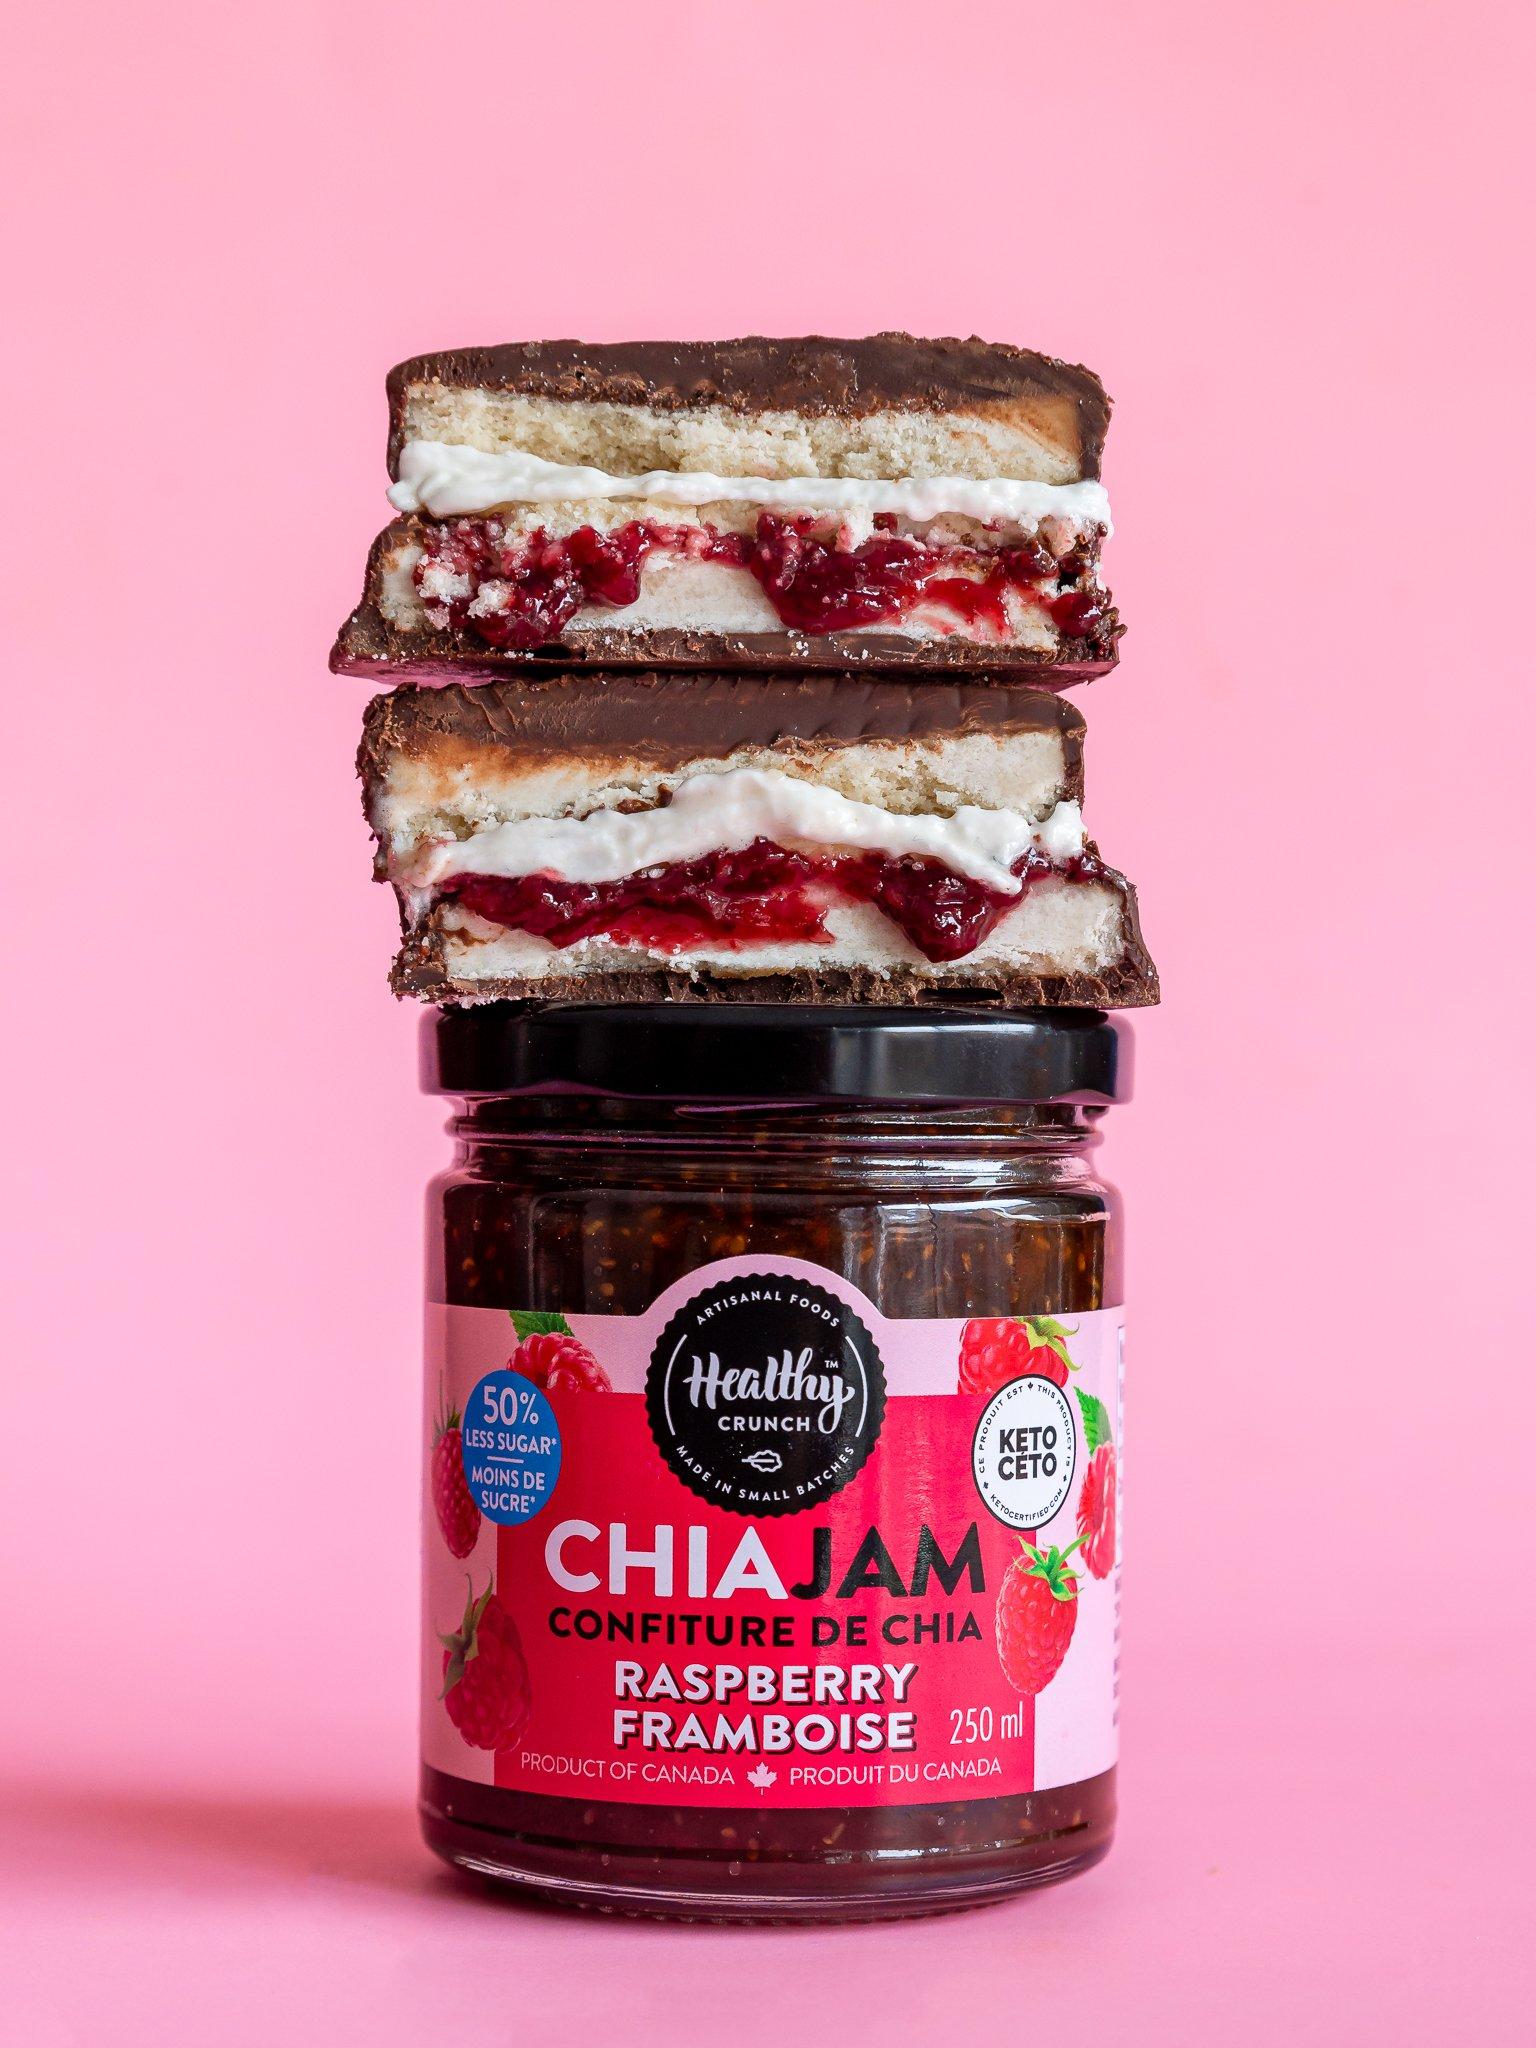 Chocolate Raspberry Chia Jam Sandwich (Gluten-free, Vegan, Allergen-friendly)